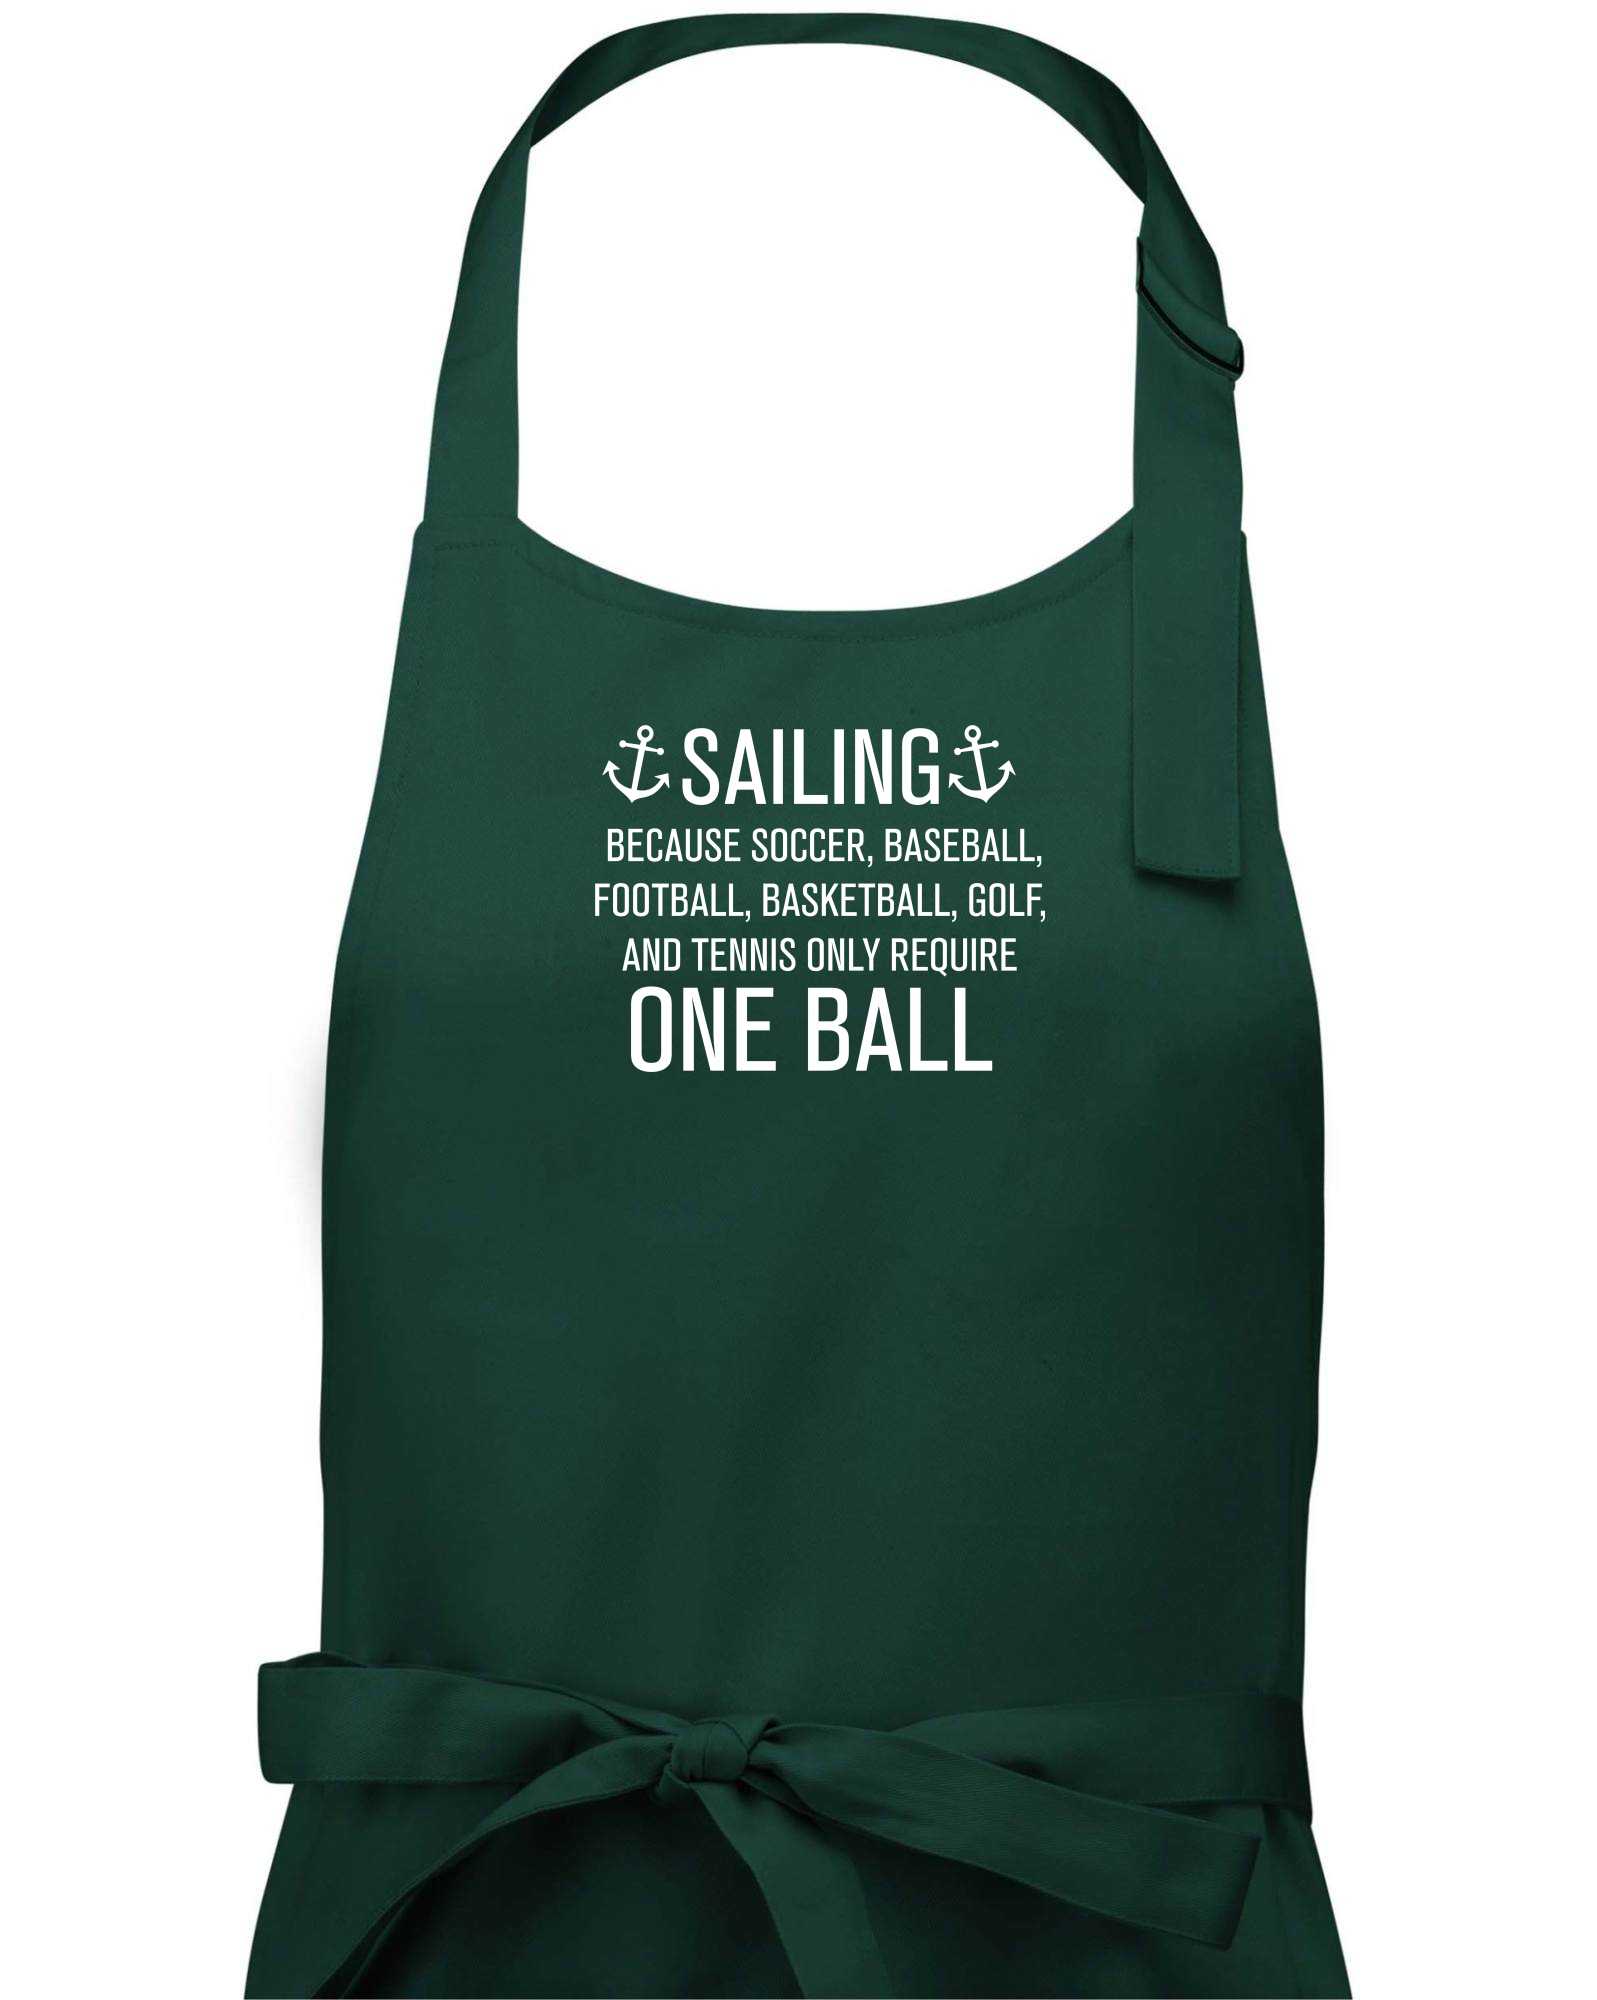 Sailing beacause one ball - Zástěra na vaření